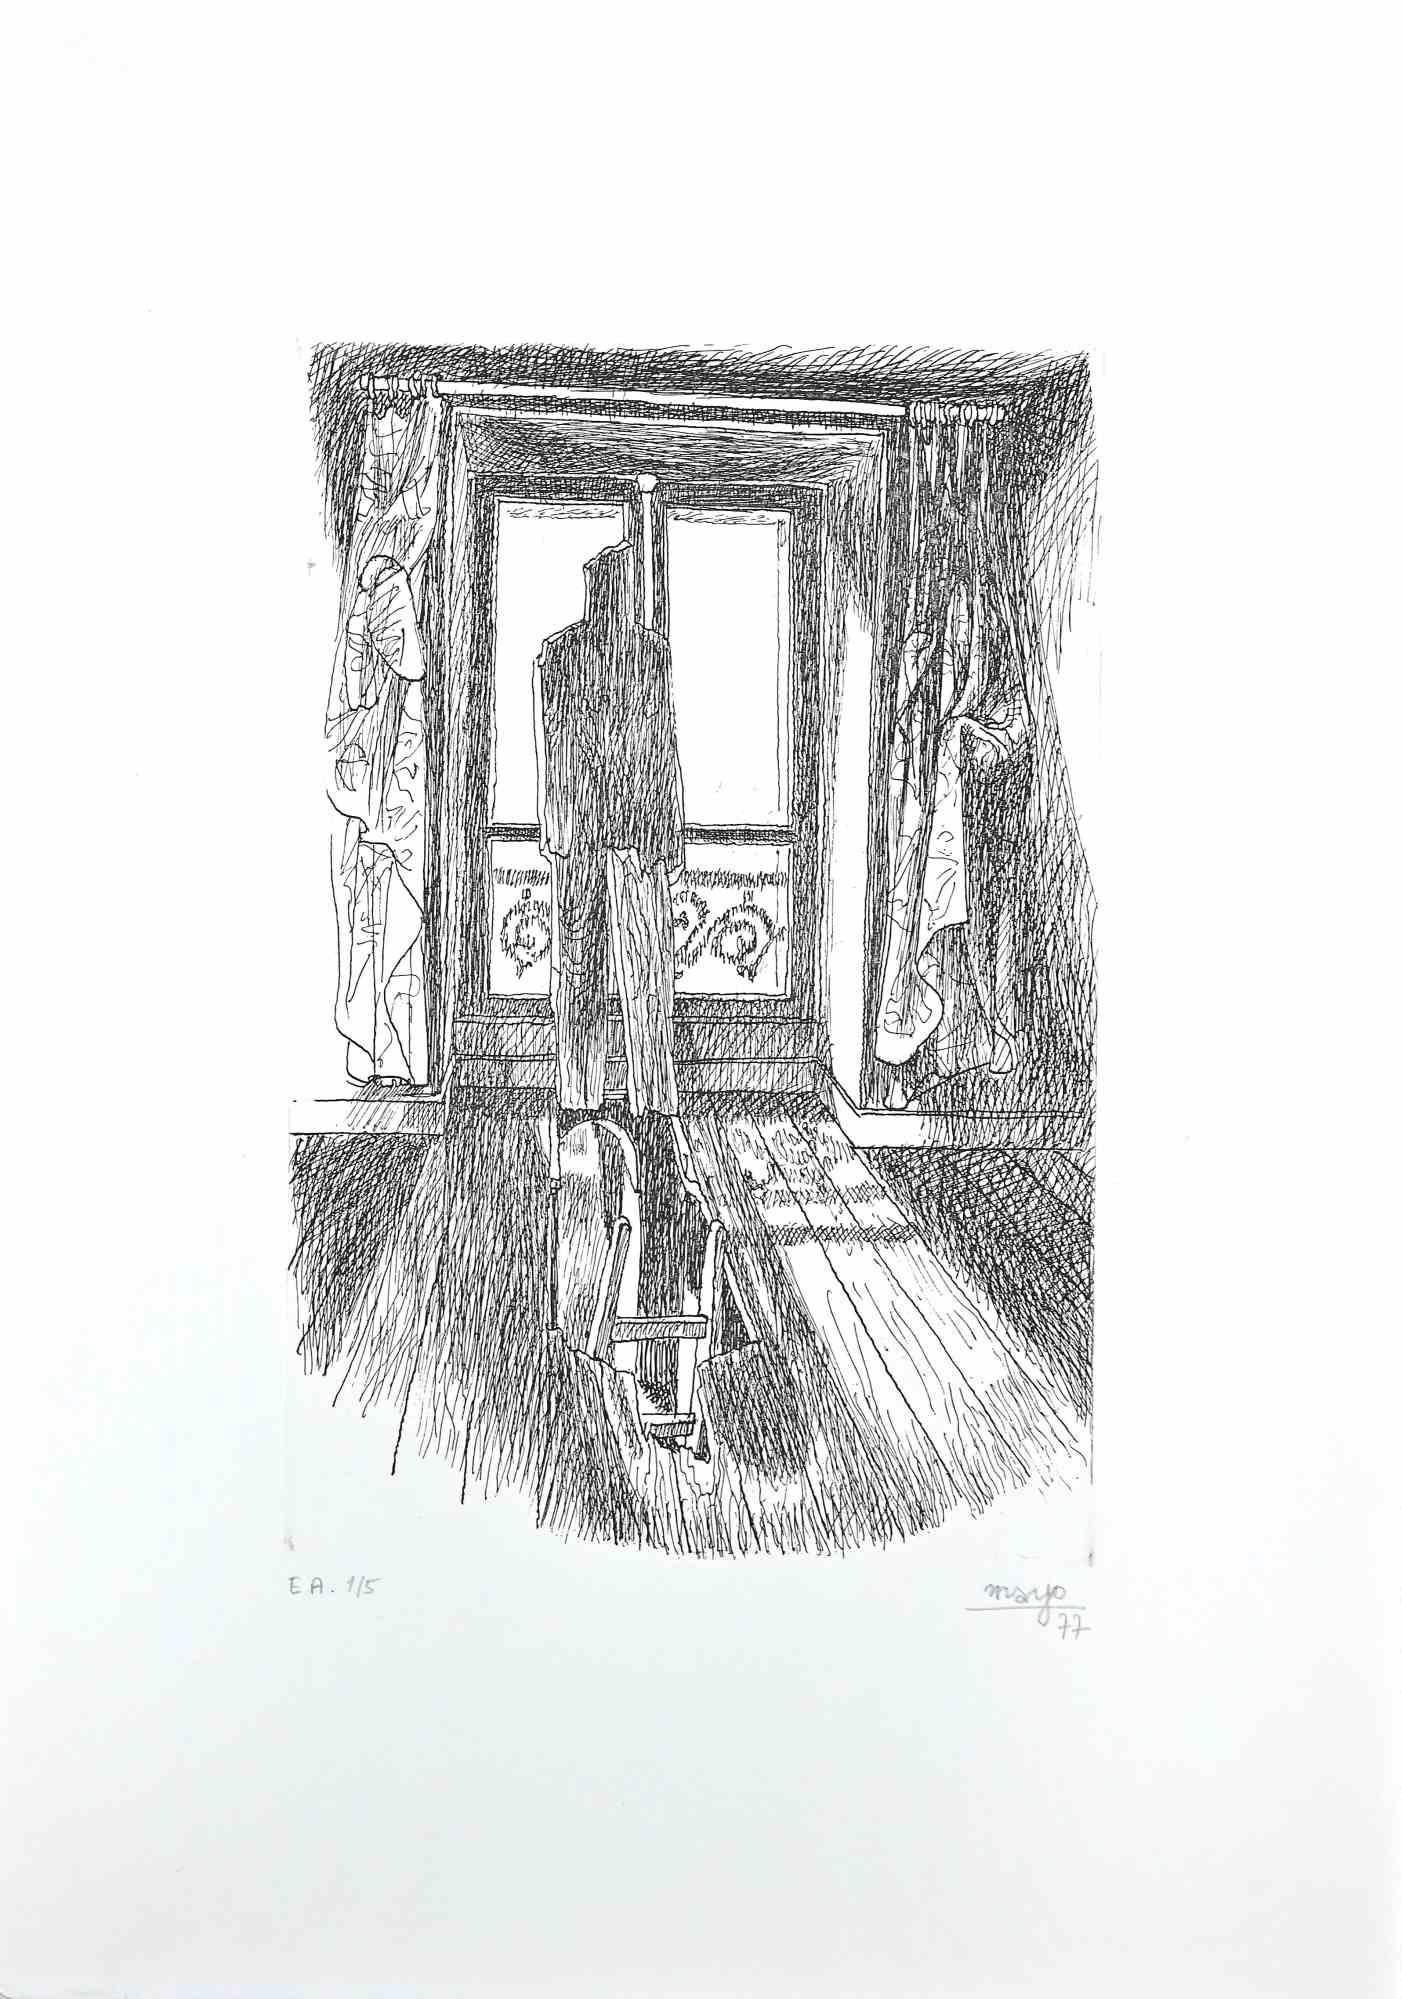 La Solitude est une gravure originale en noir et blanc sur papier, réalisée par l'artiste Antoine Mayo, nom d'artiste de Malliarakis (1905-1990) en 1977.

Signé au crayon dans la marge inférieure droite, comme le rapporte l'inscription au crayon